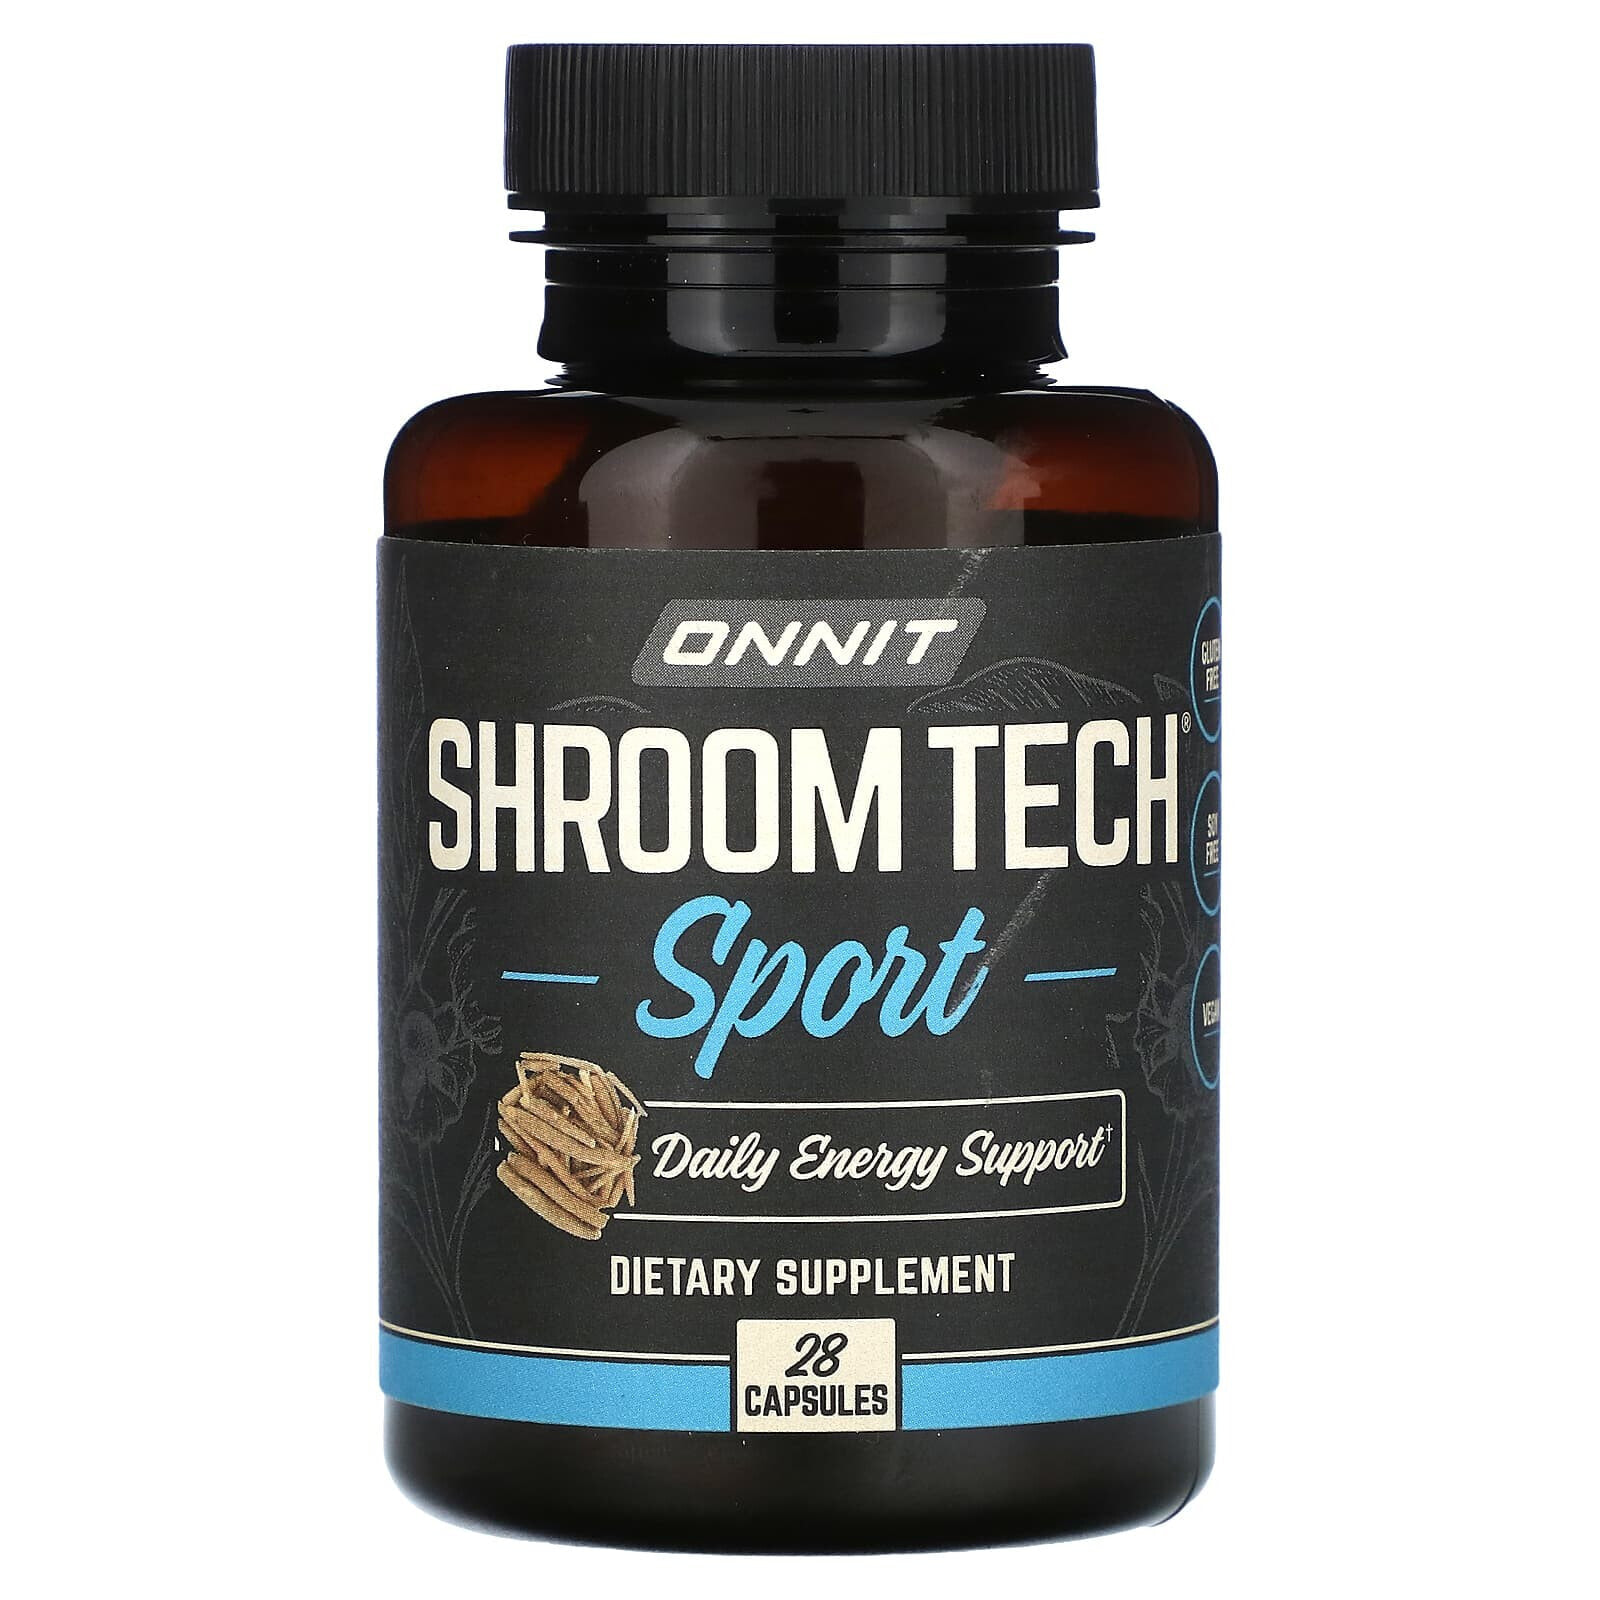 Shroom Tech Sport, 28 Capsules